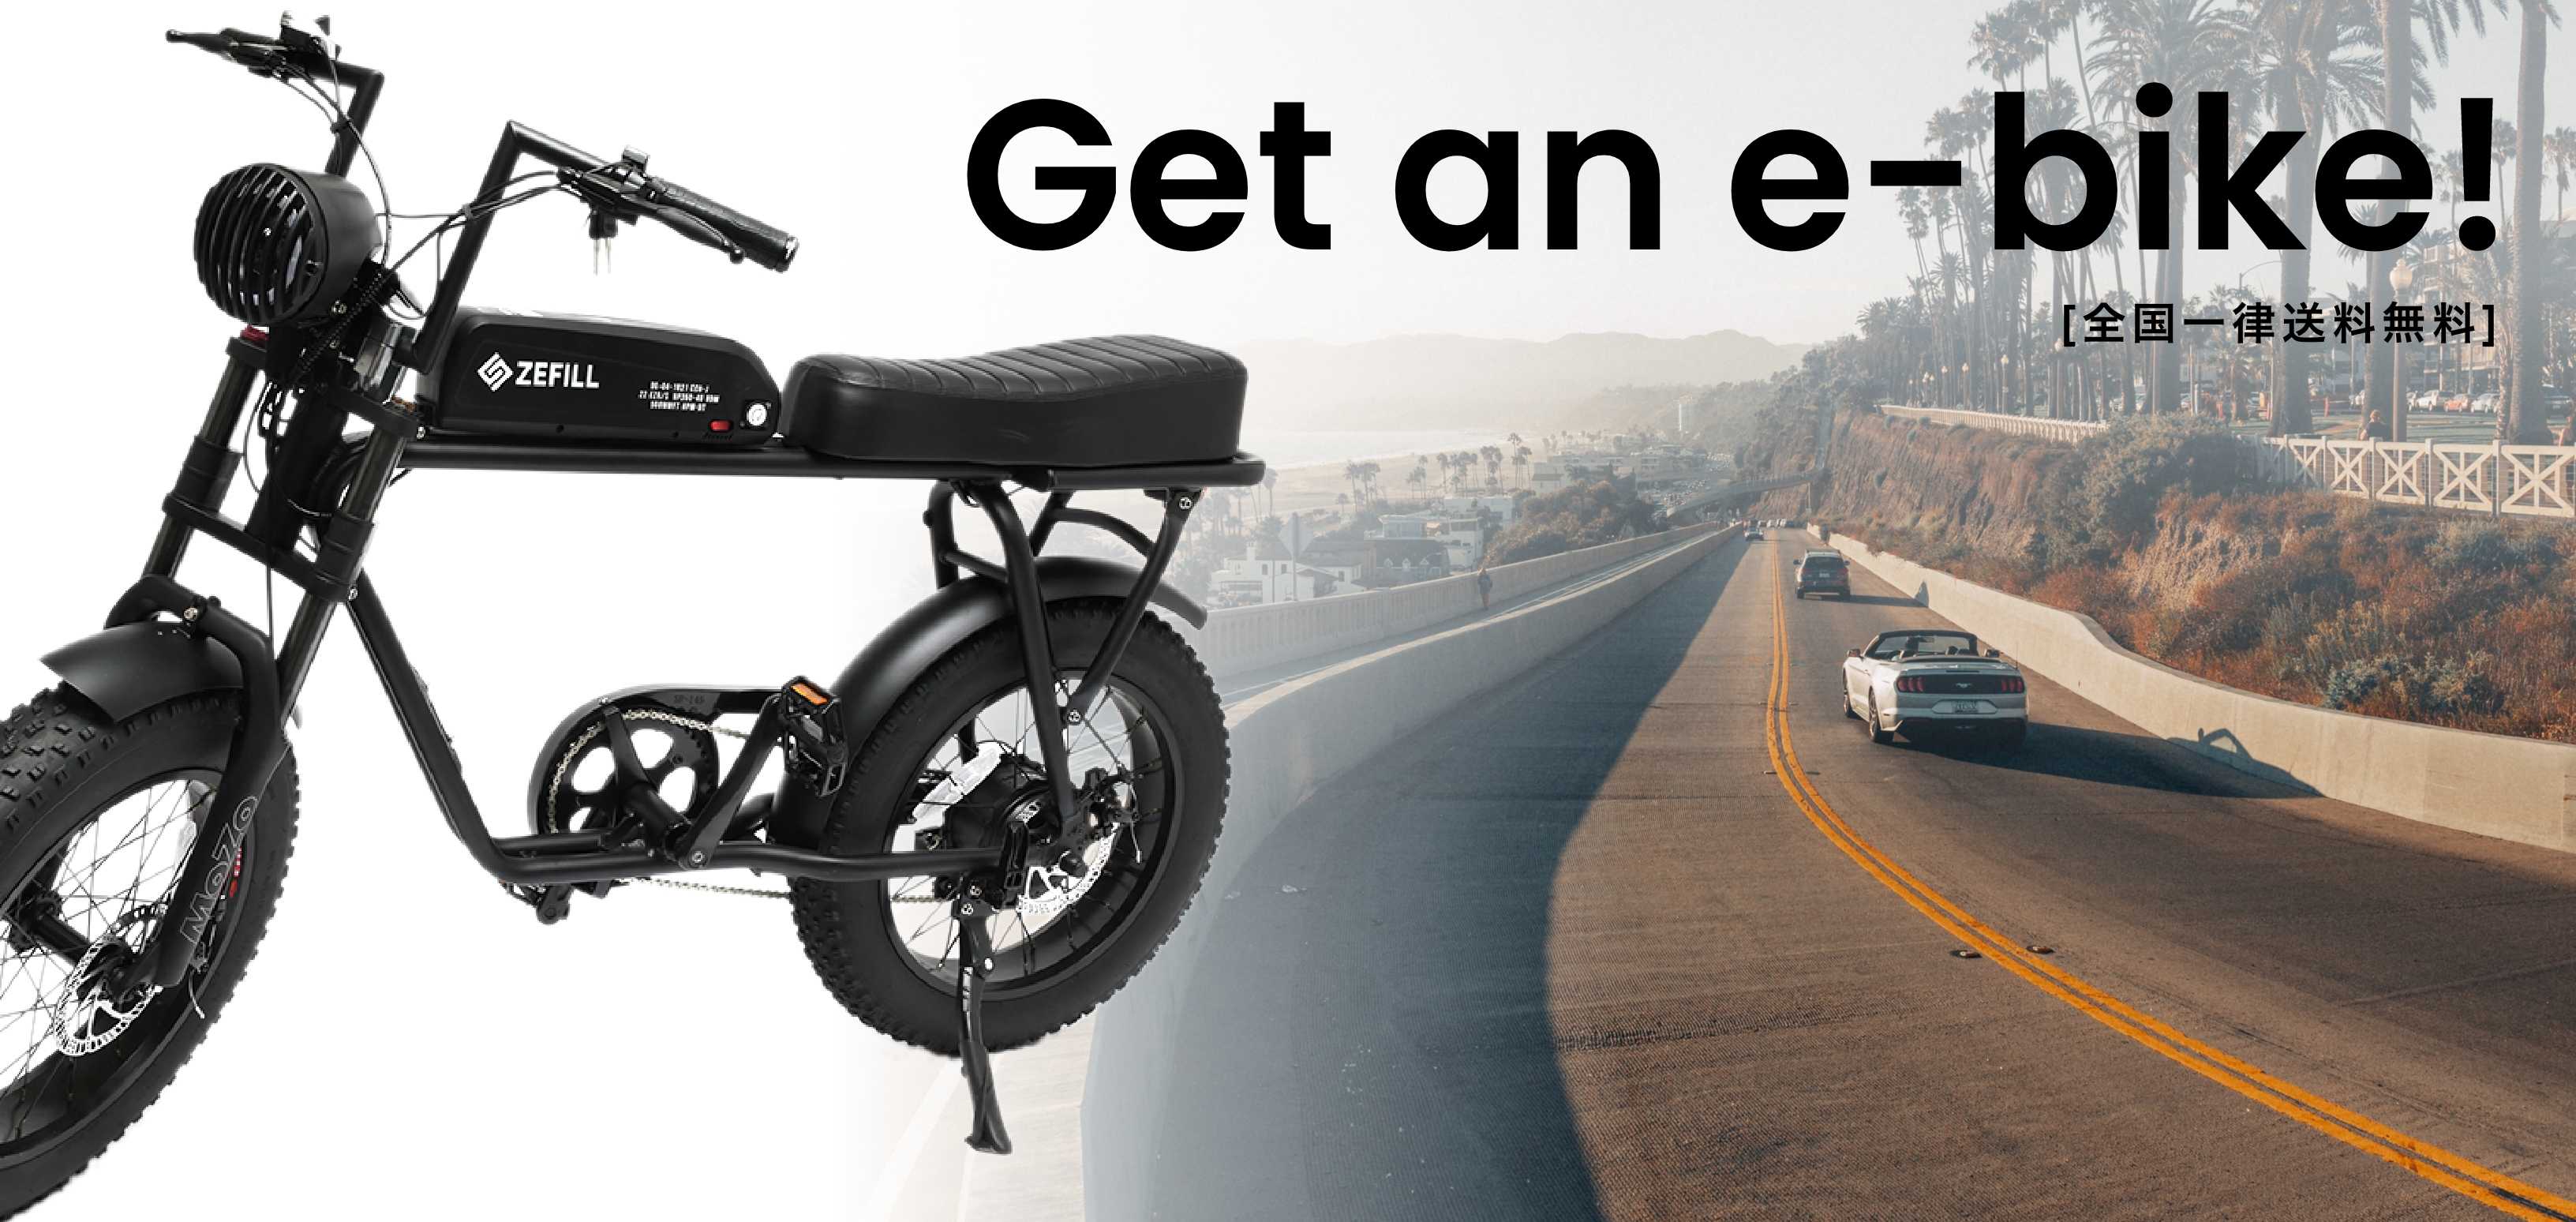 Get an e-bike! eバイクのある生活を手に入れよう